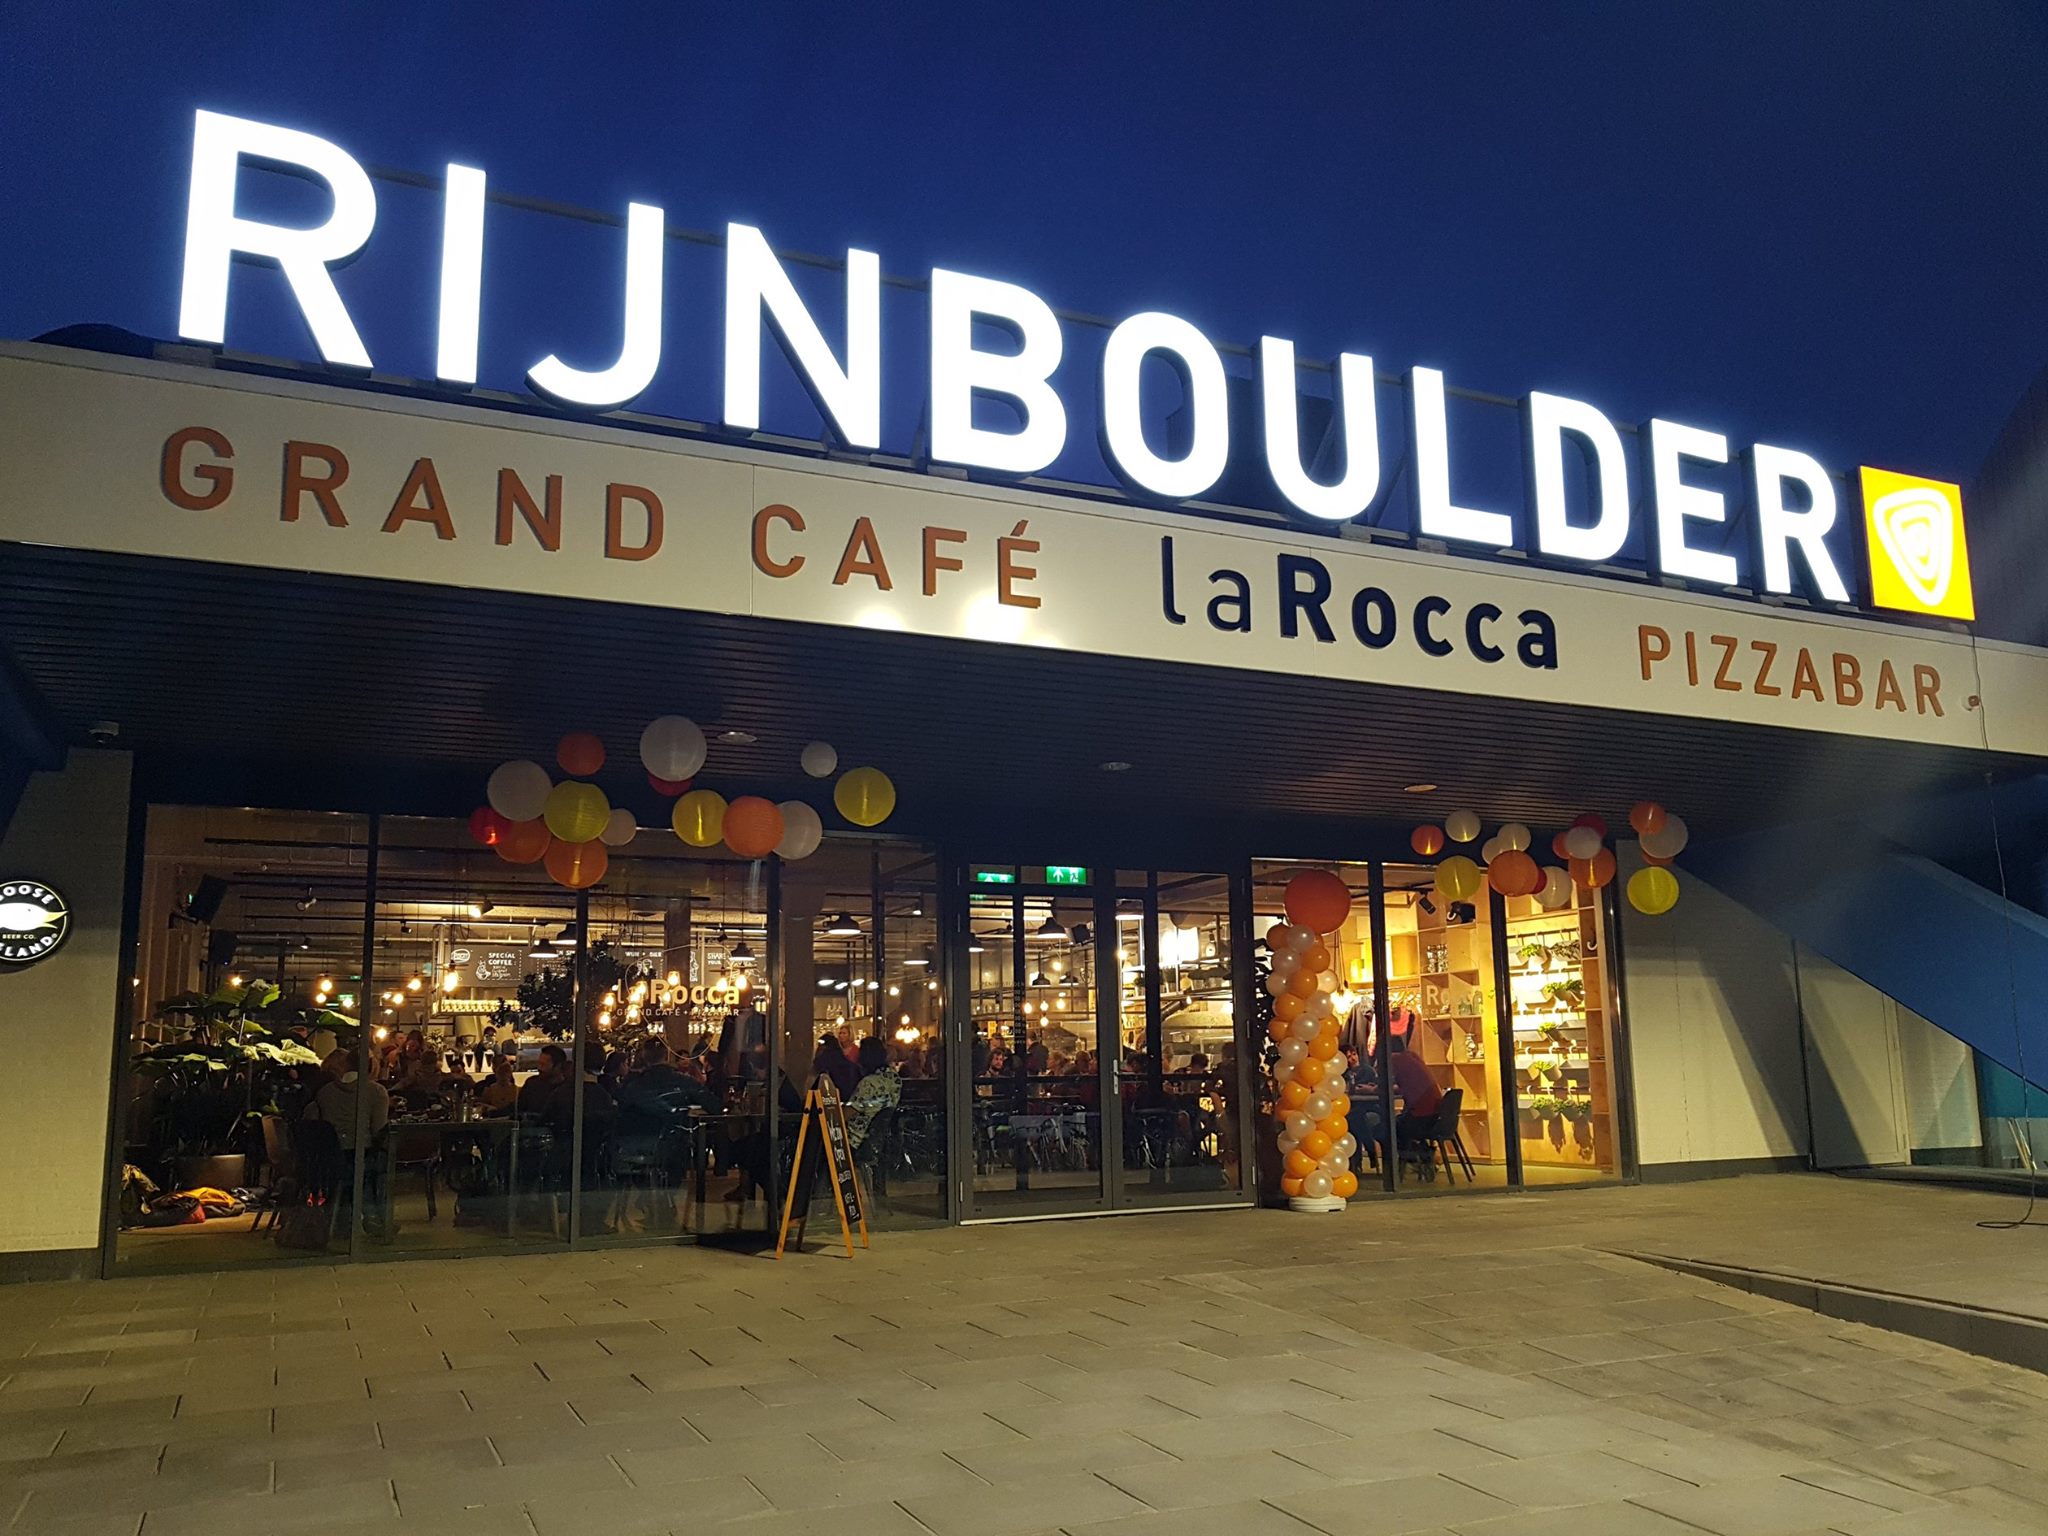 Openingstijden RijnBoulder en La Rocca per 1 oktober aangepast 1